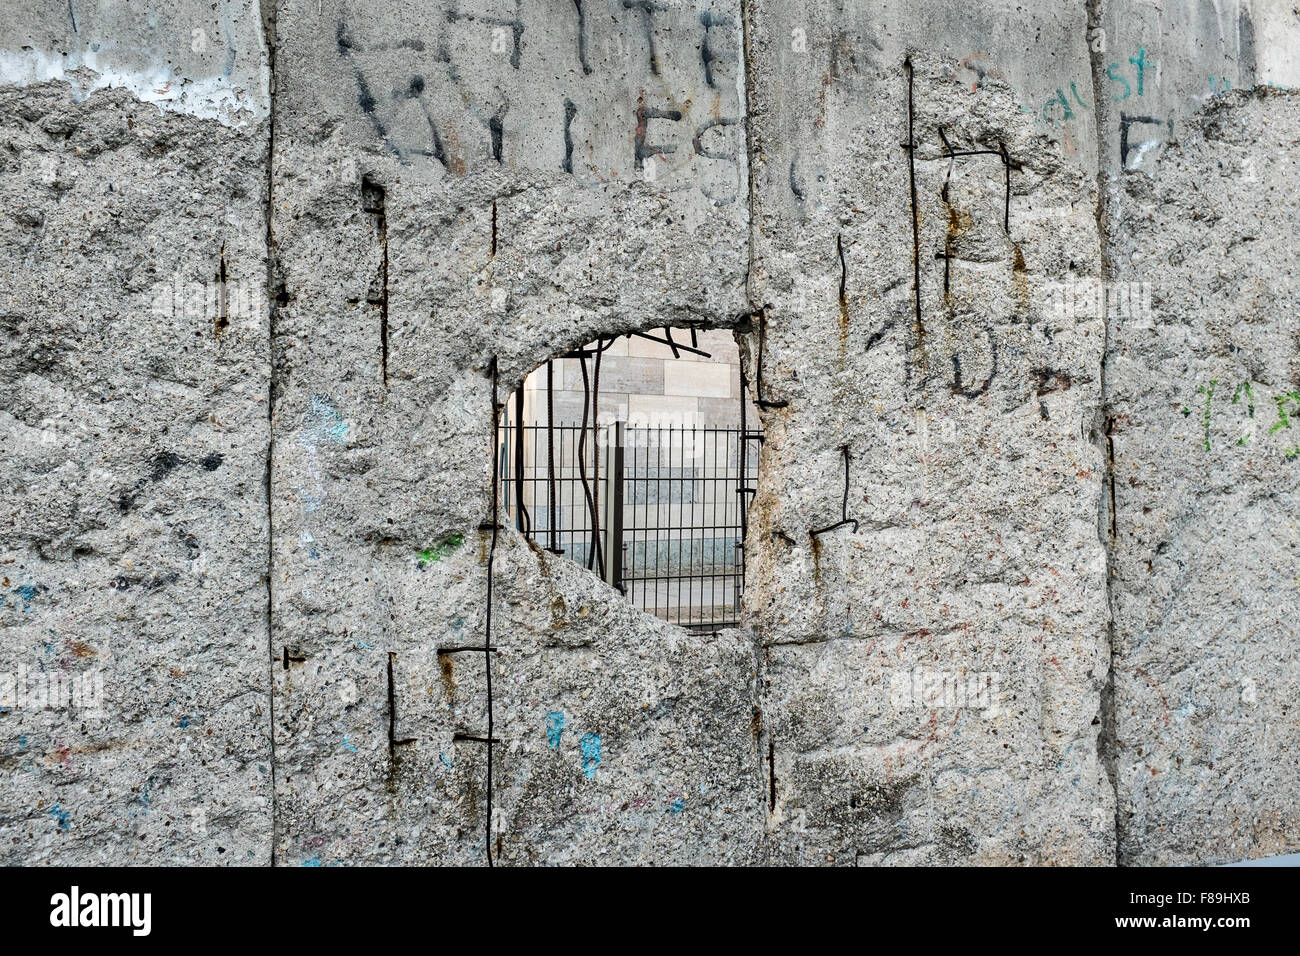 Berlin Wall, Germany Stock Photo